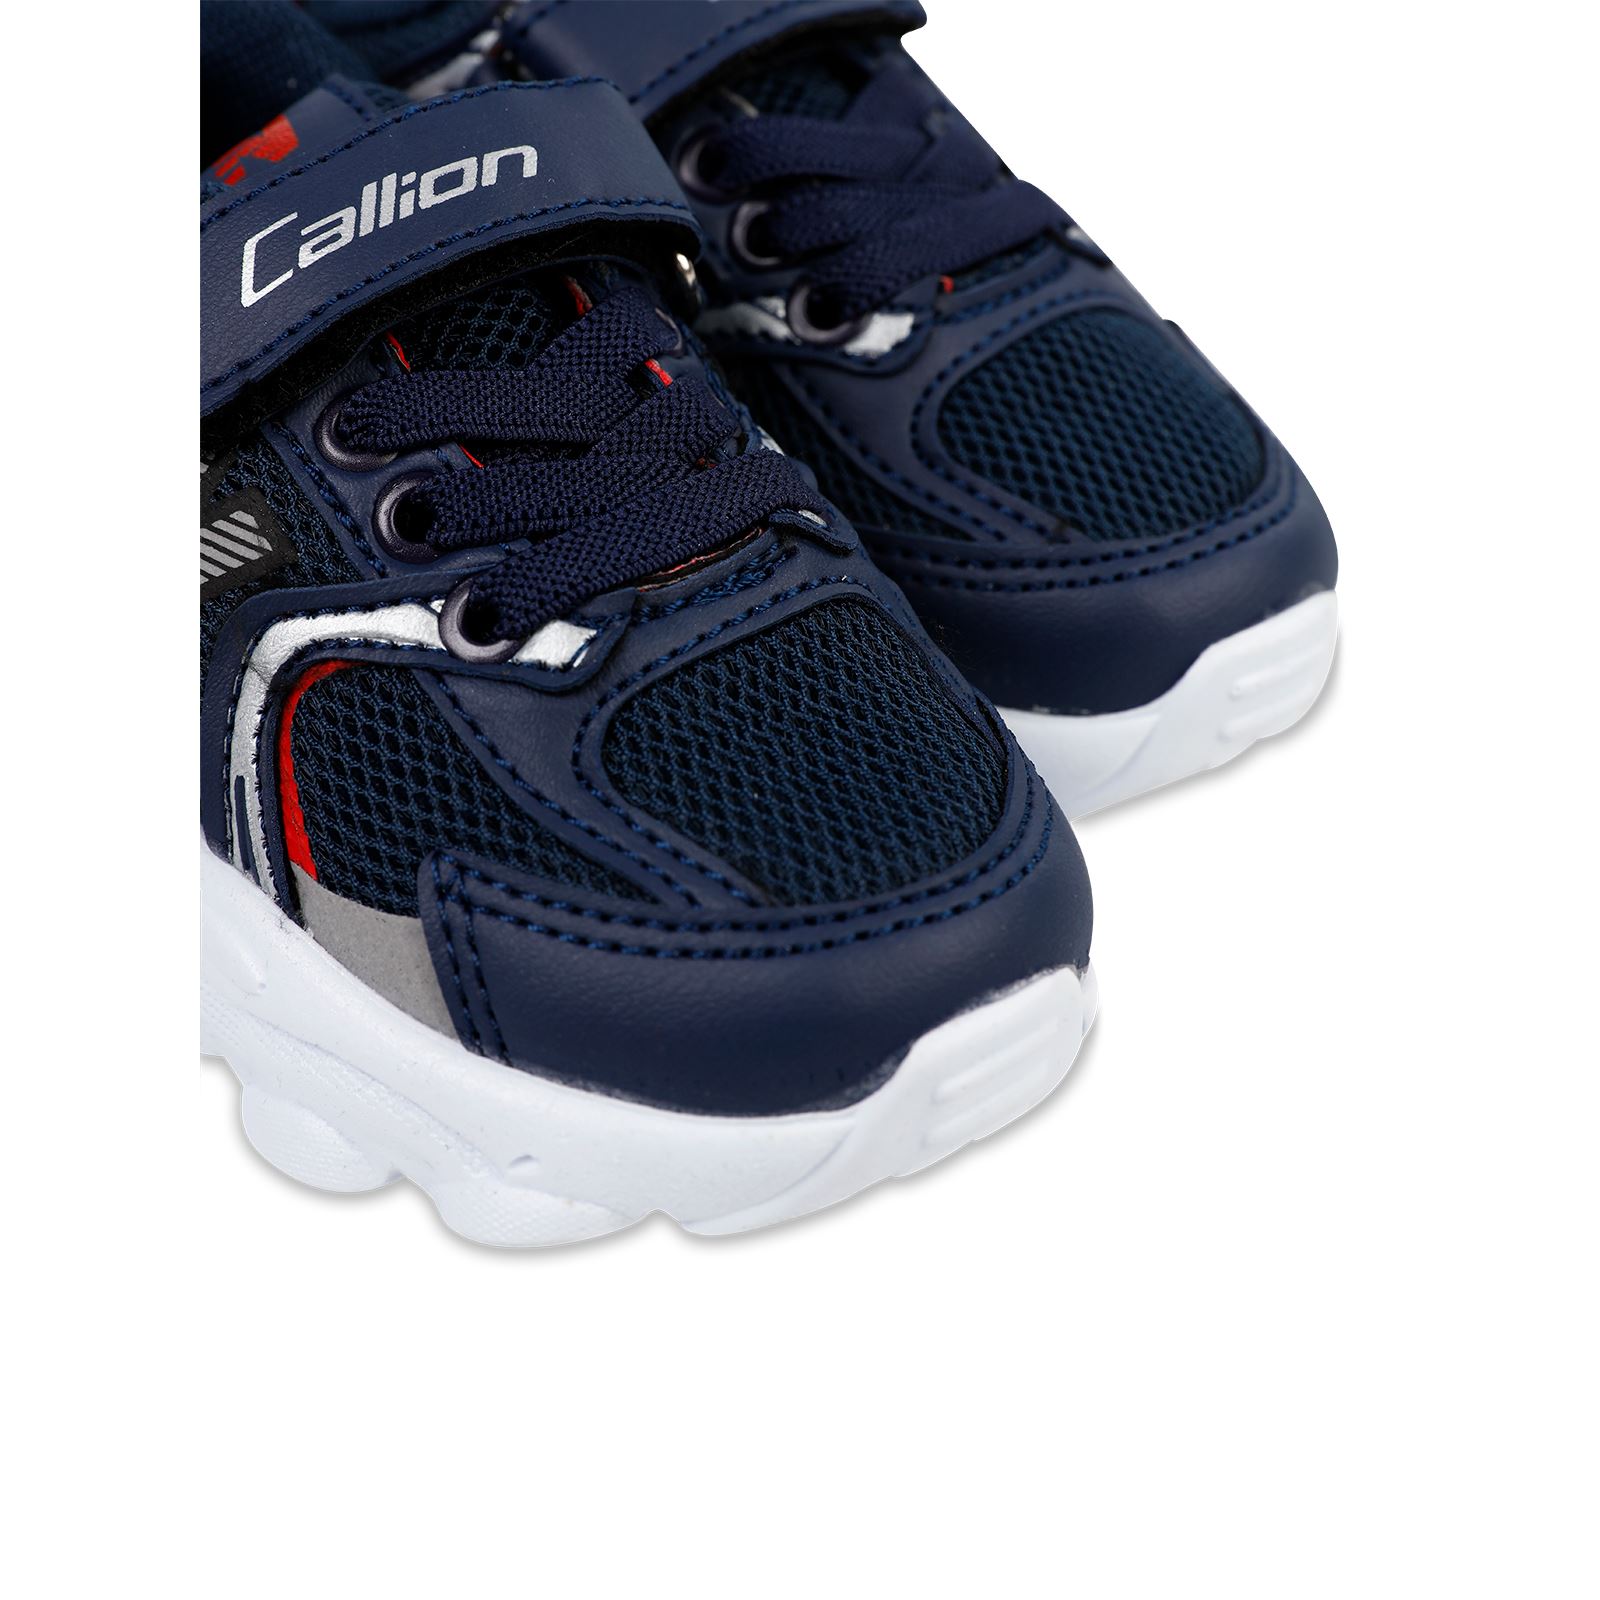 Callion Erkek Çocuk Spor Ayakkabı 22-25 Numara Lacivert-Kırmızı